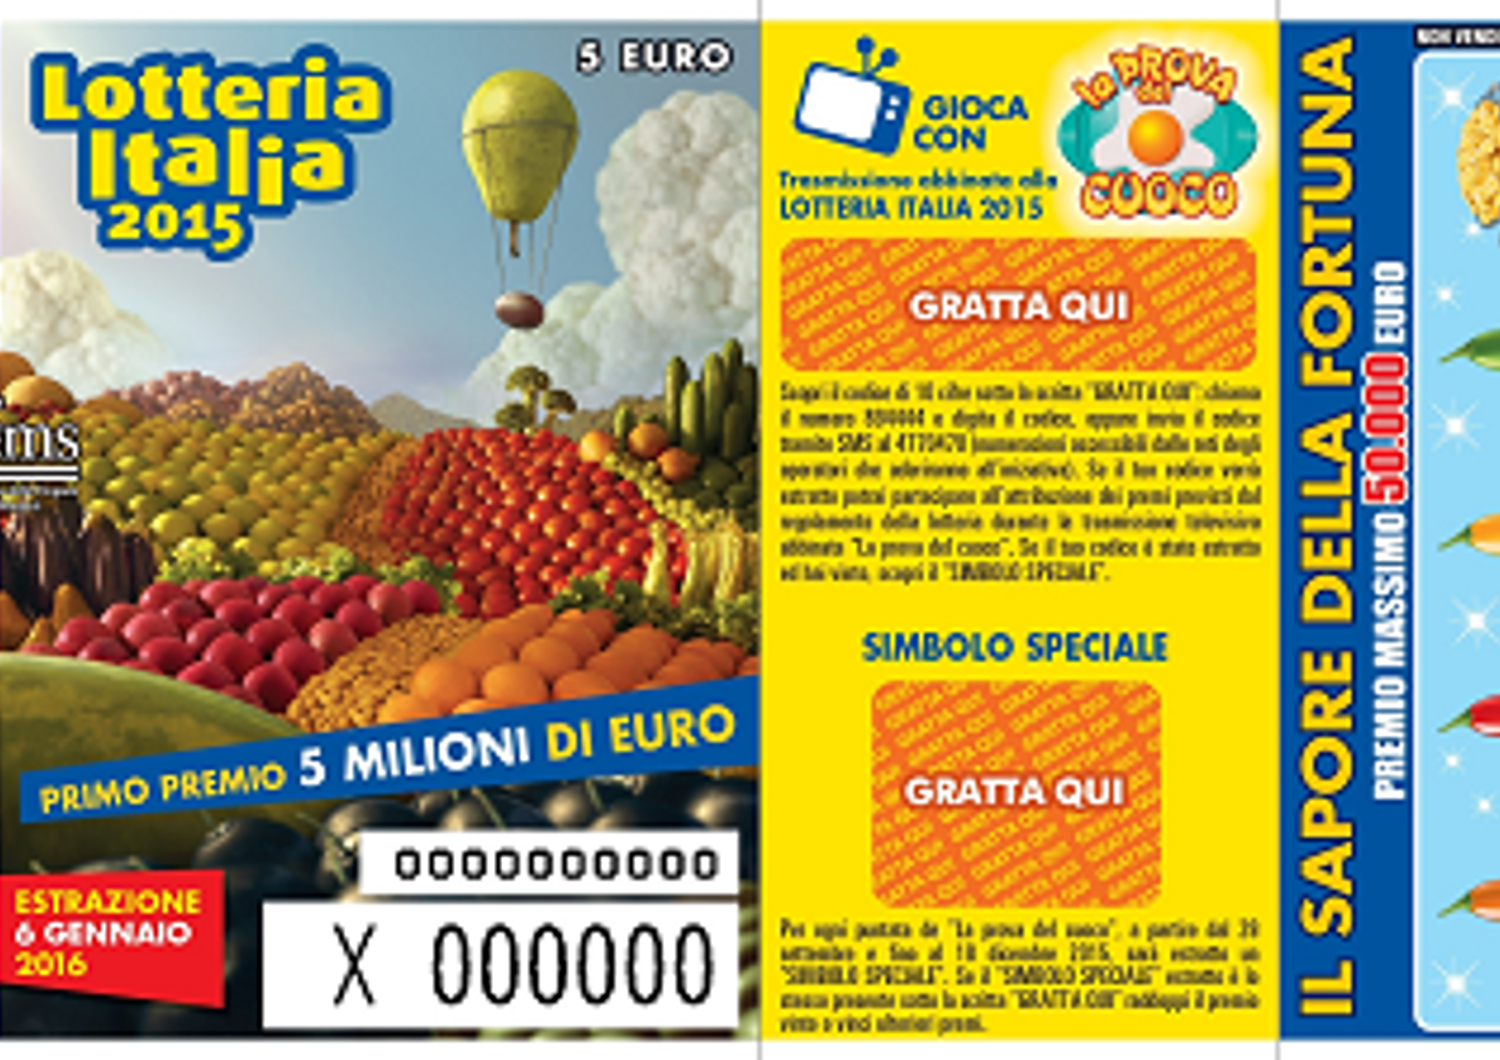 Lotteria Italia (lottomatica)&nbsp;